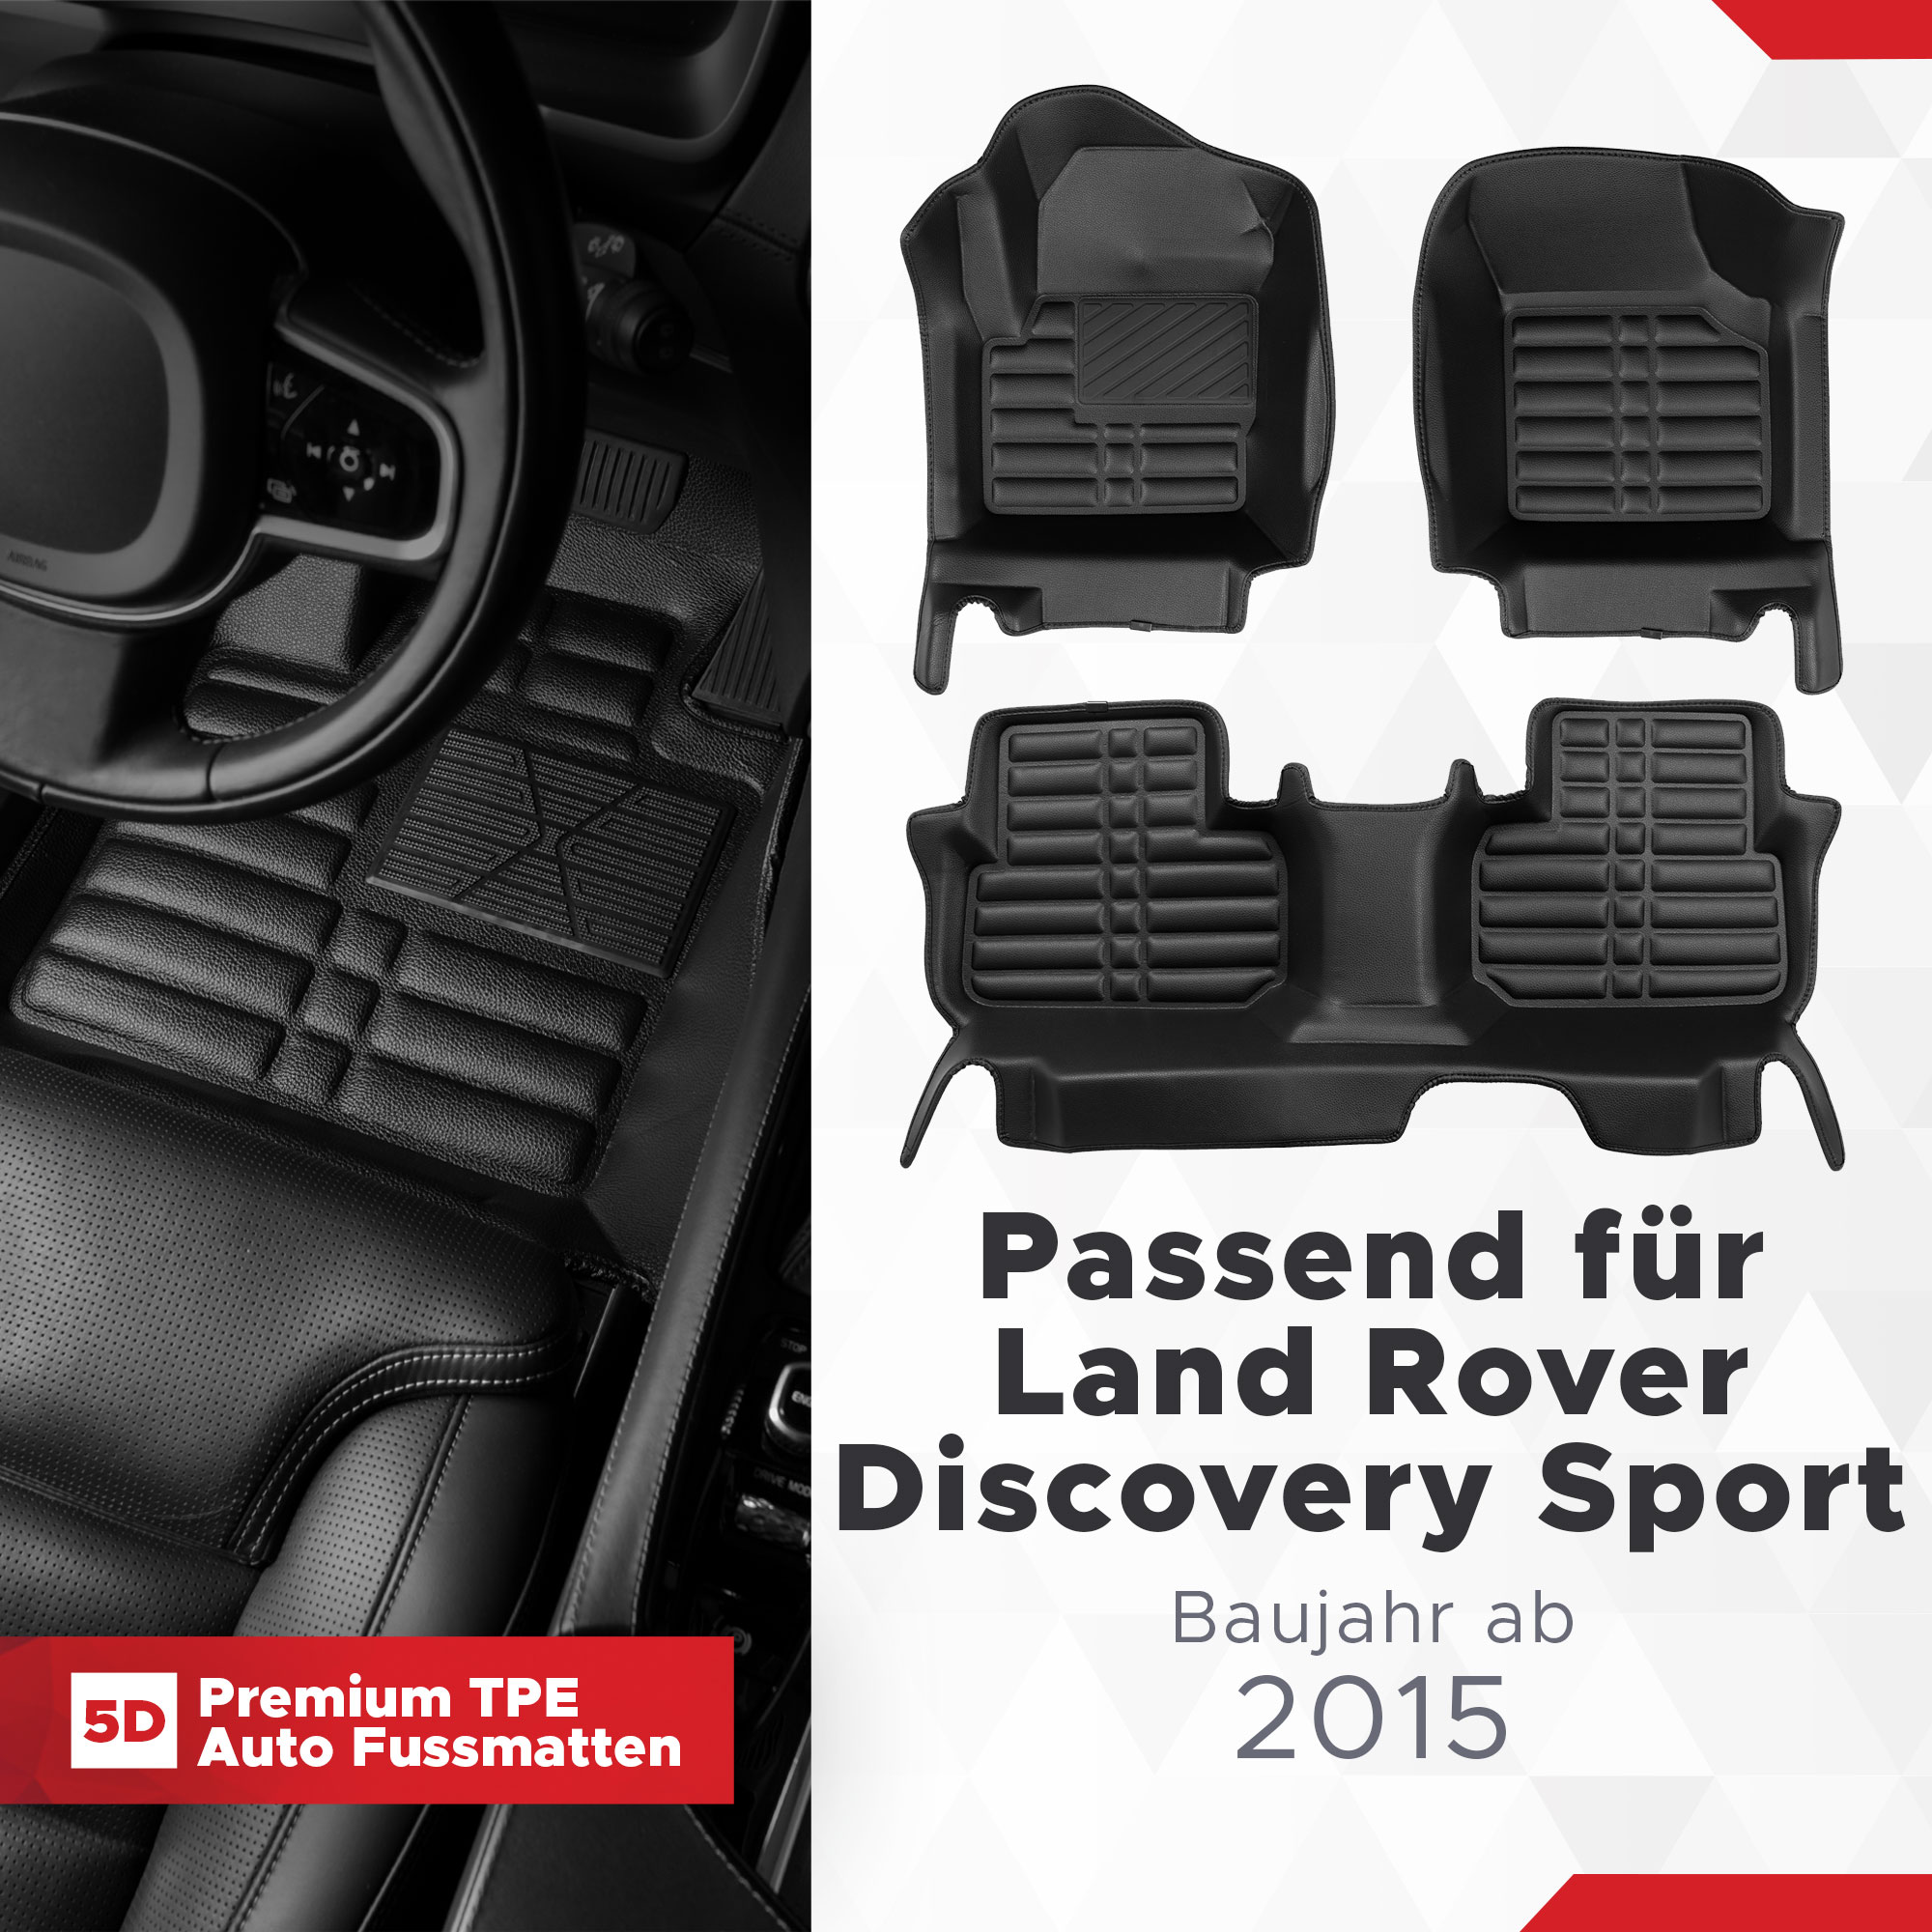 TPE Fussmatten 2015 Rover 5D ab Sport Land Bj Discovery